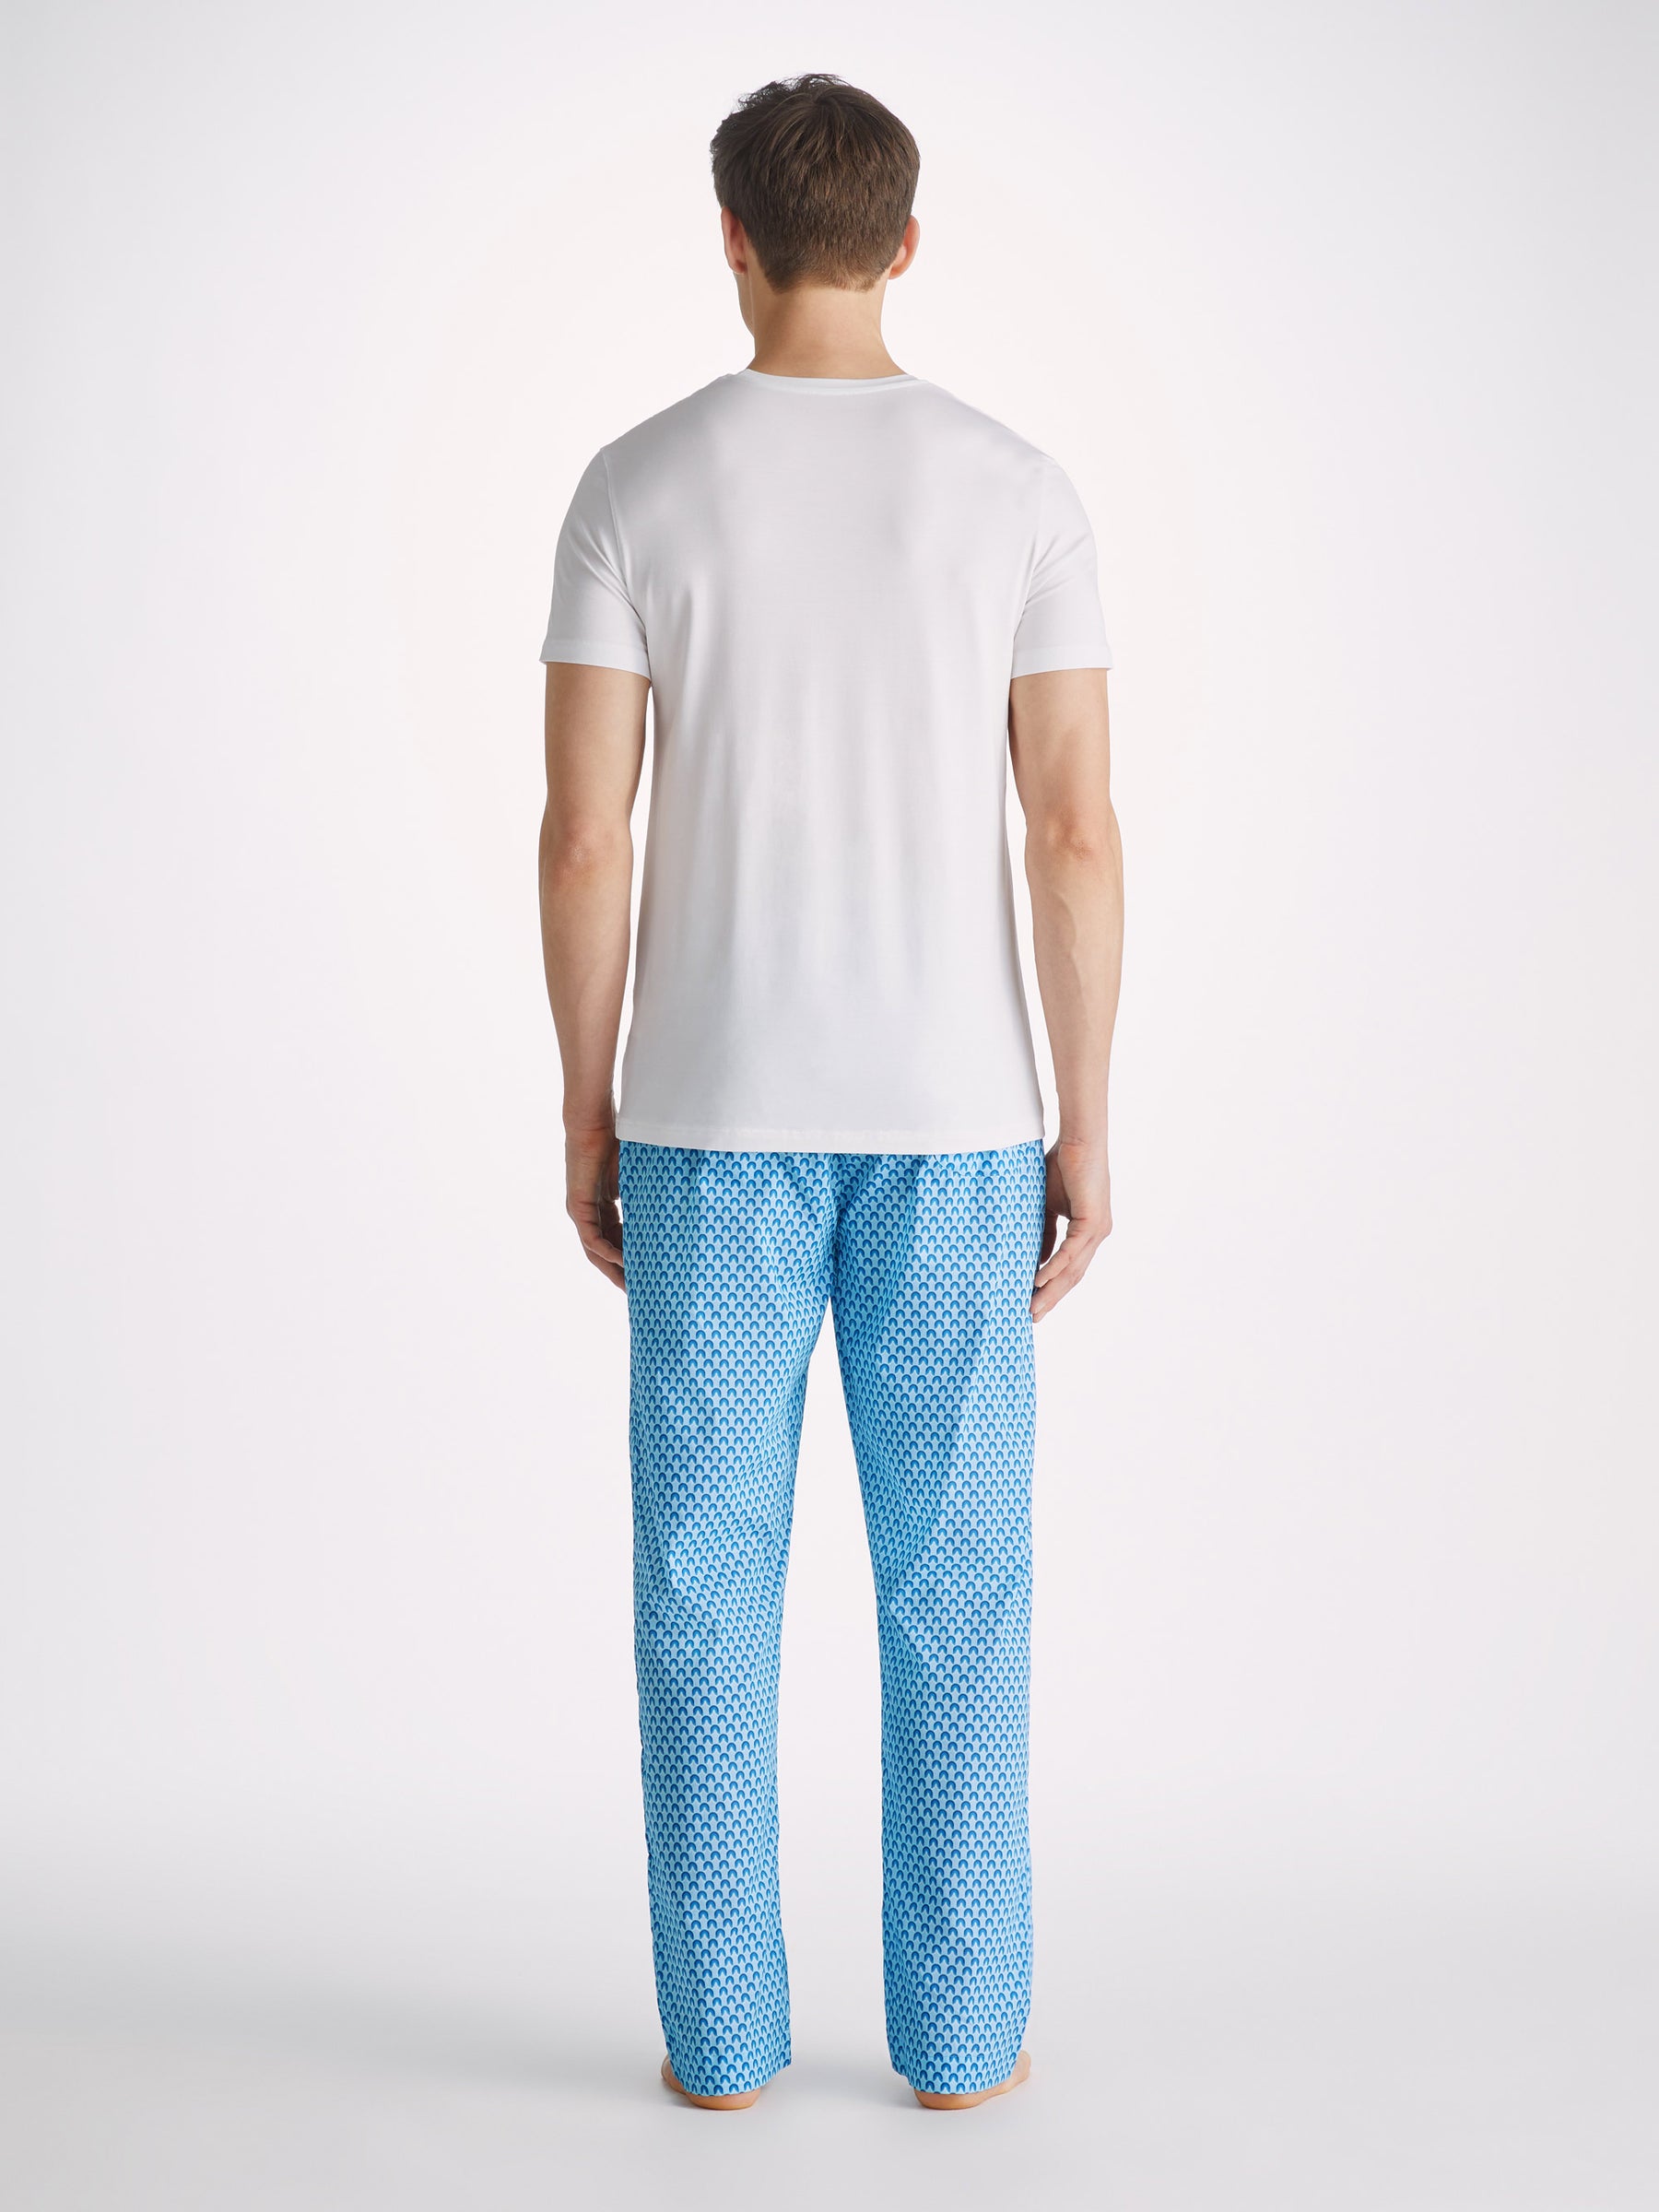 Men's Lounge Trousers Ledbury 65 Batiste Cotton Blue